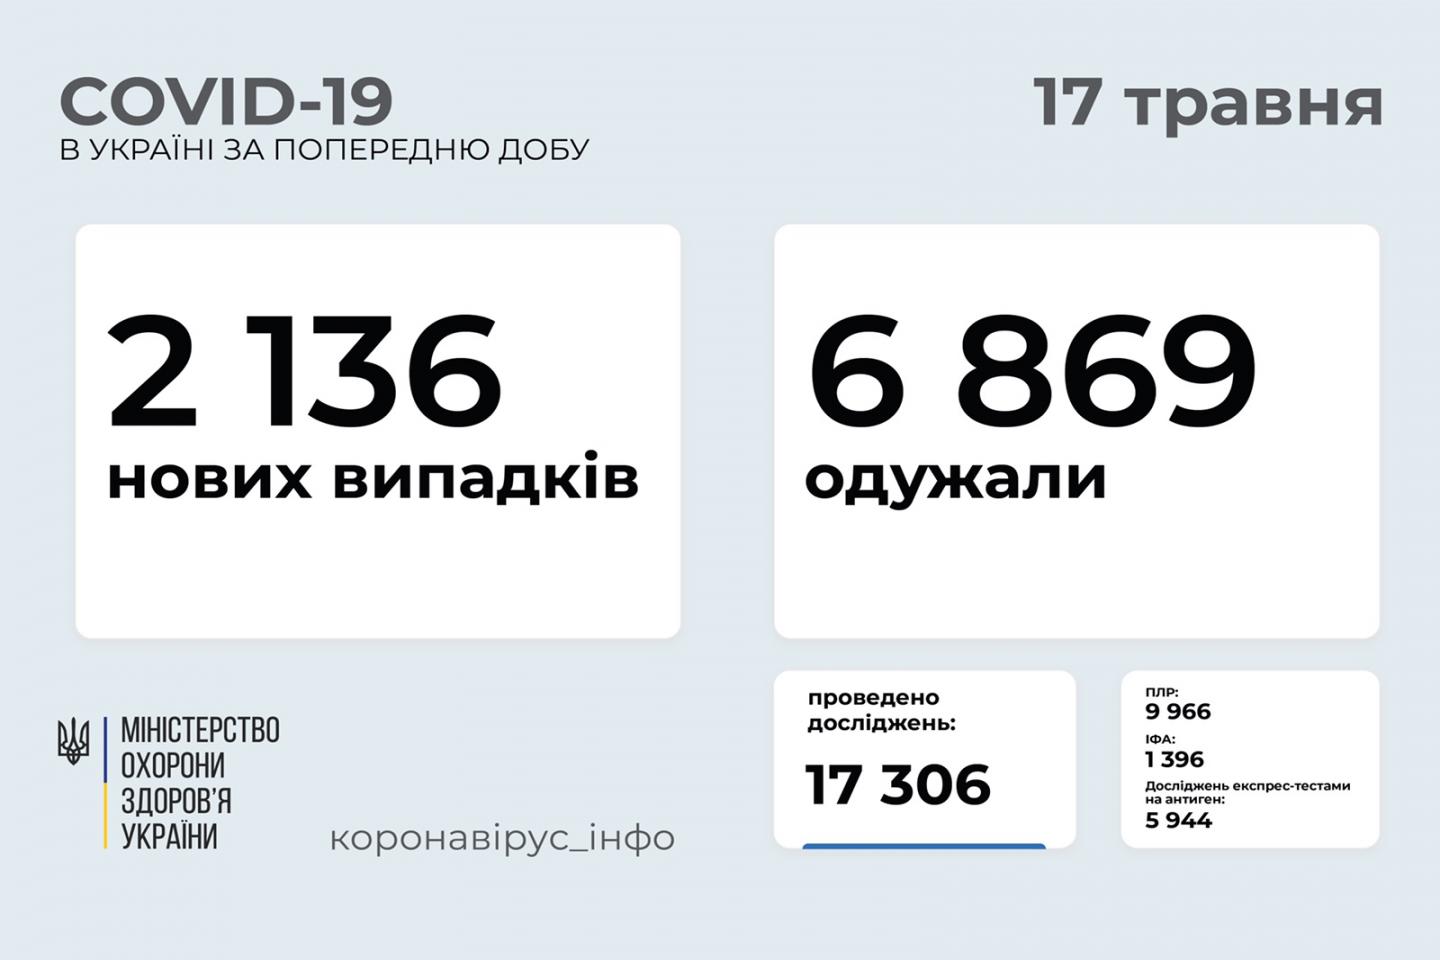 http://dunrada.gov.ua/uploadfile/archive_news/2021/05/17/2021-05-17_5092/images/images-2765.jpg